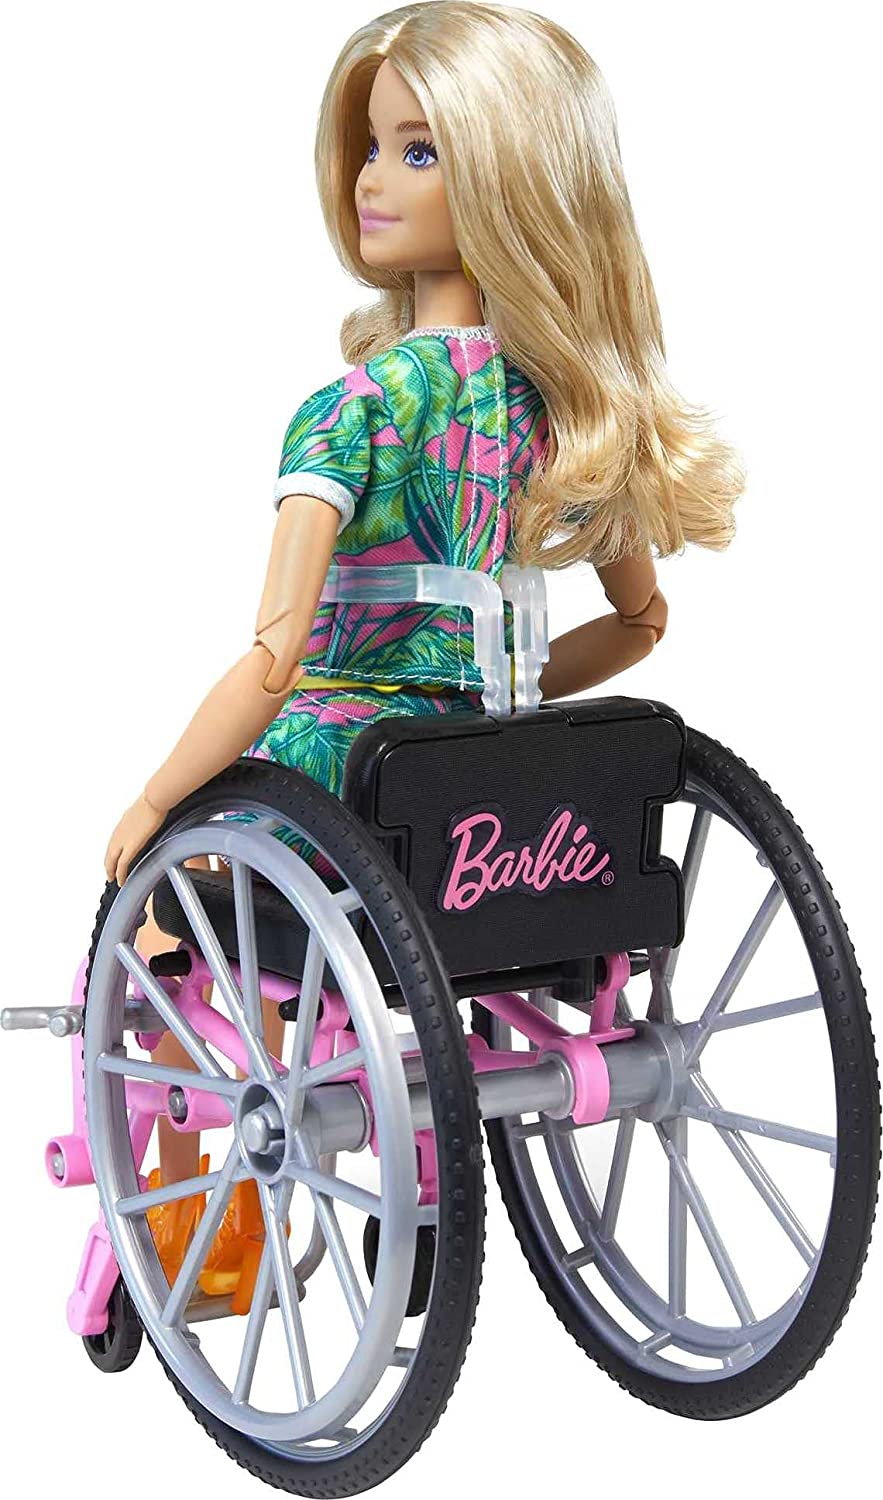 Muñeca Barbie Fashionistas GRB93 con silla de ruedas y cabello largo y rubio